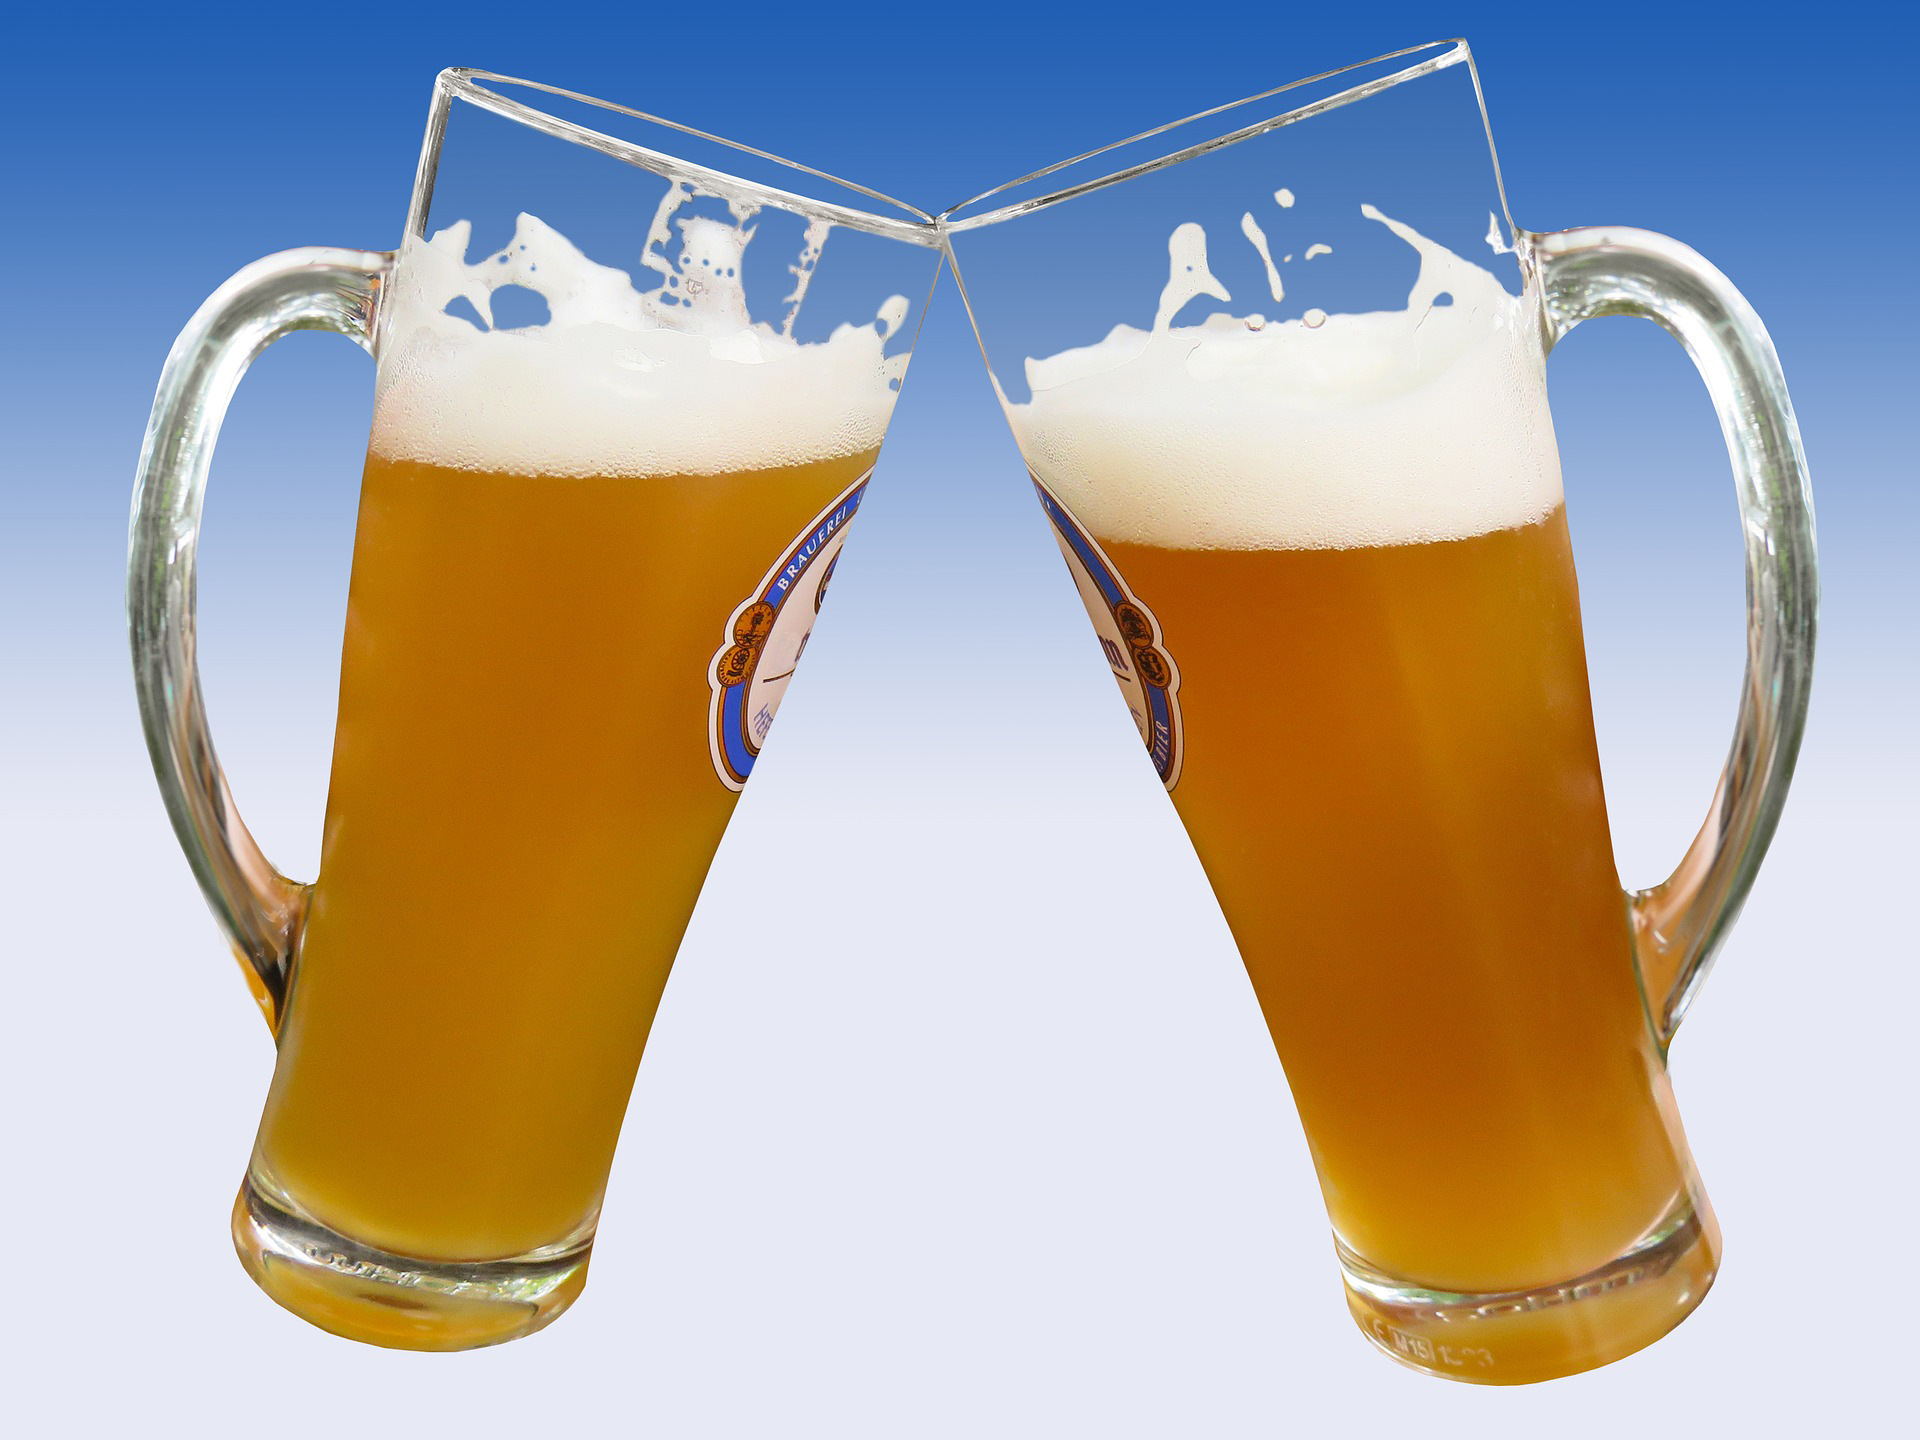 El consumo de cerveza está presente en cualquier tipo de reunión. Su sabor amargo y refrescante hizo de la cerveza una bebida muy popular.